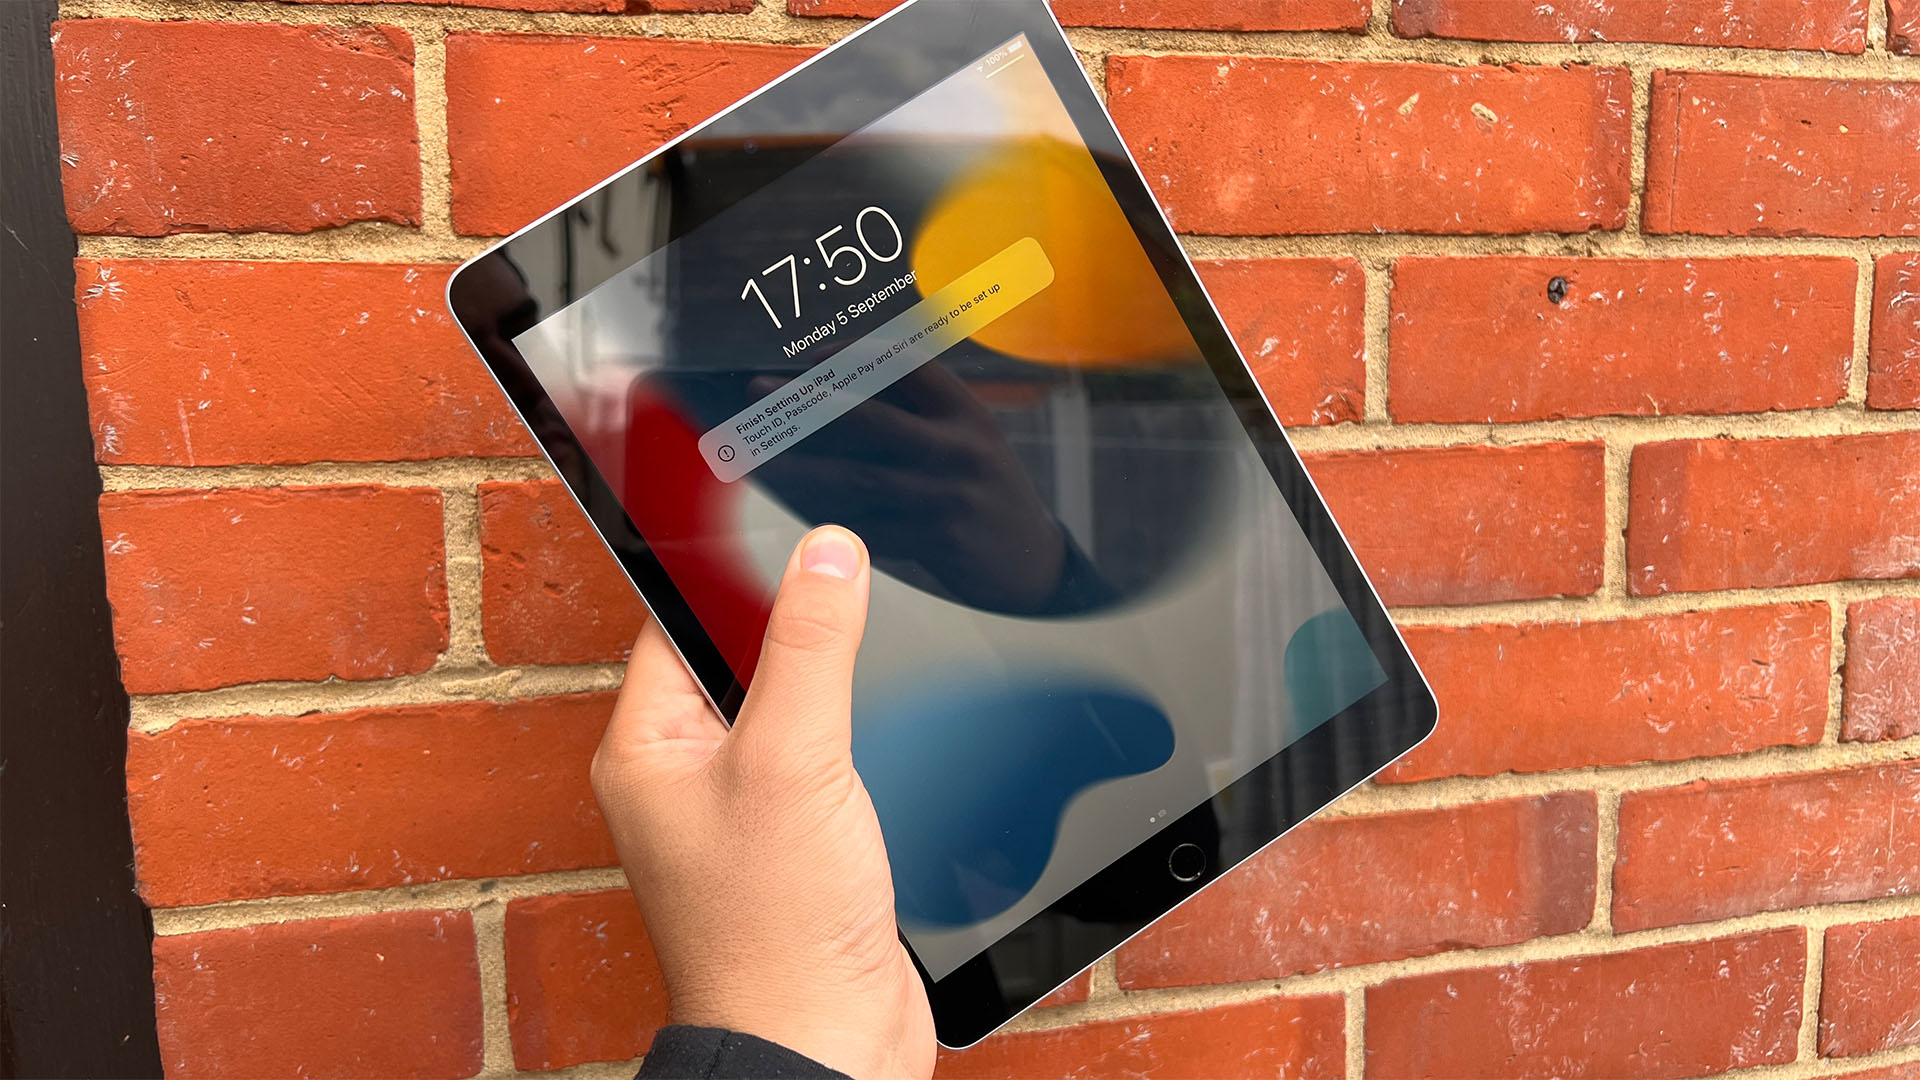 Immagine ravvicinata di Apple iPad 2021